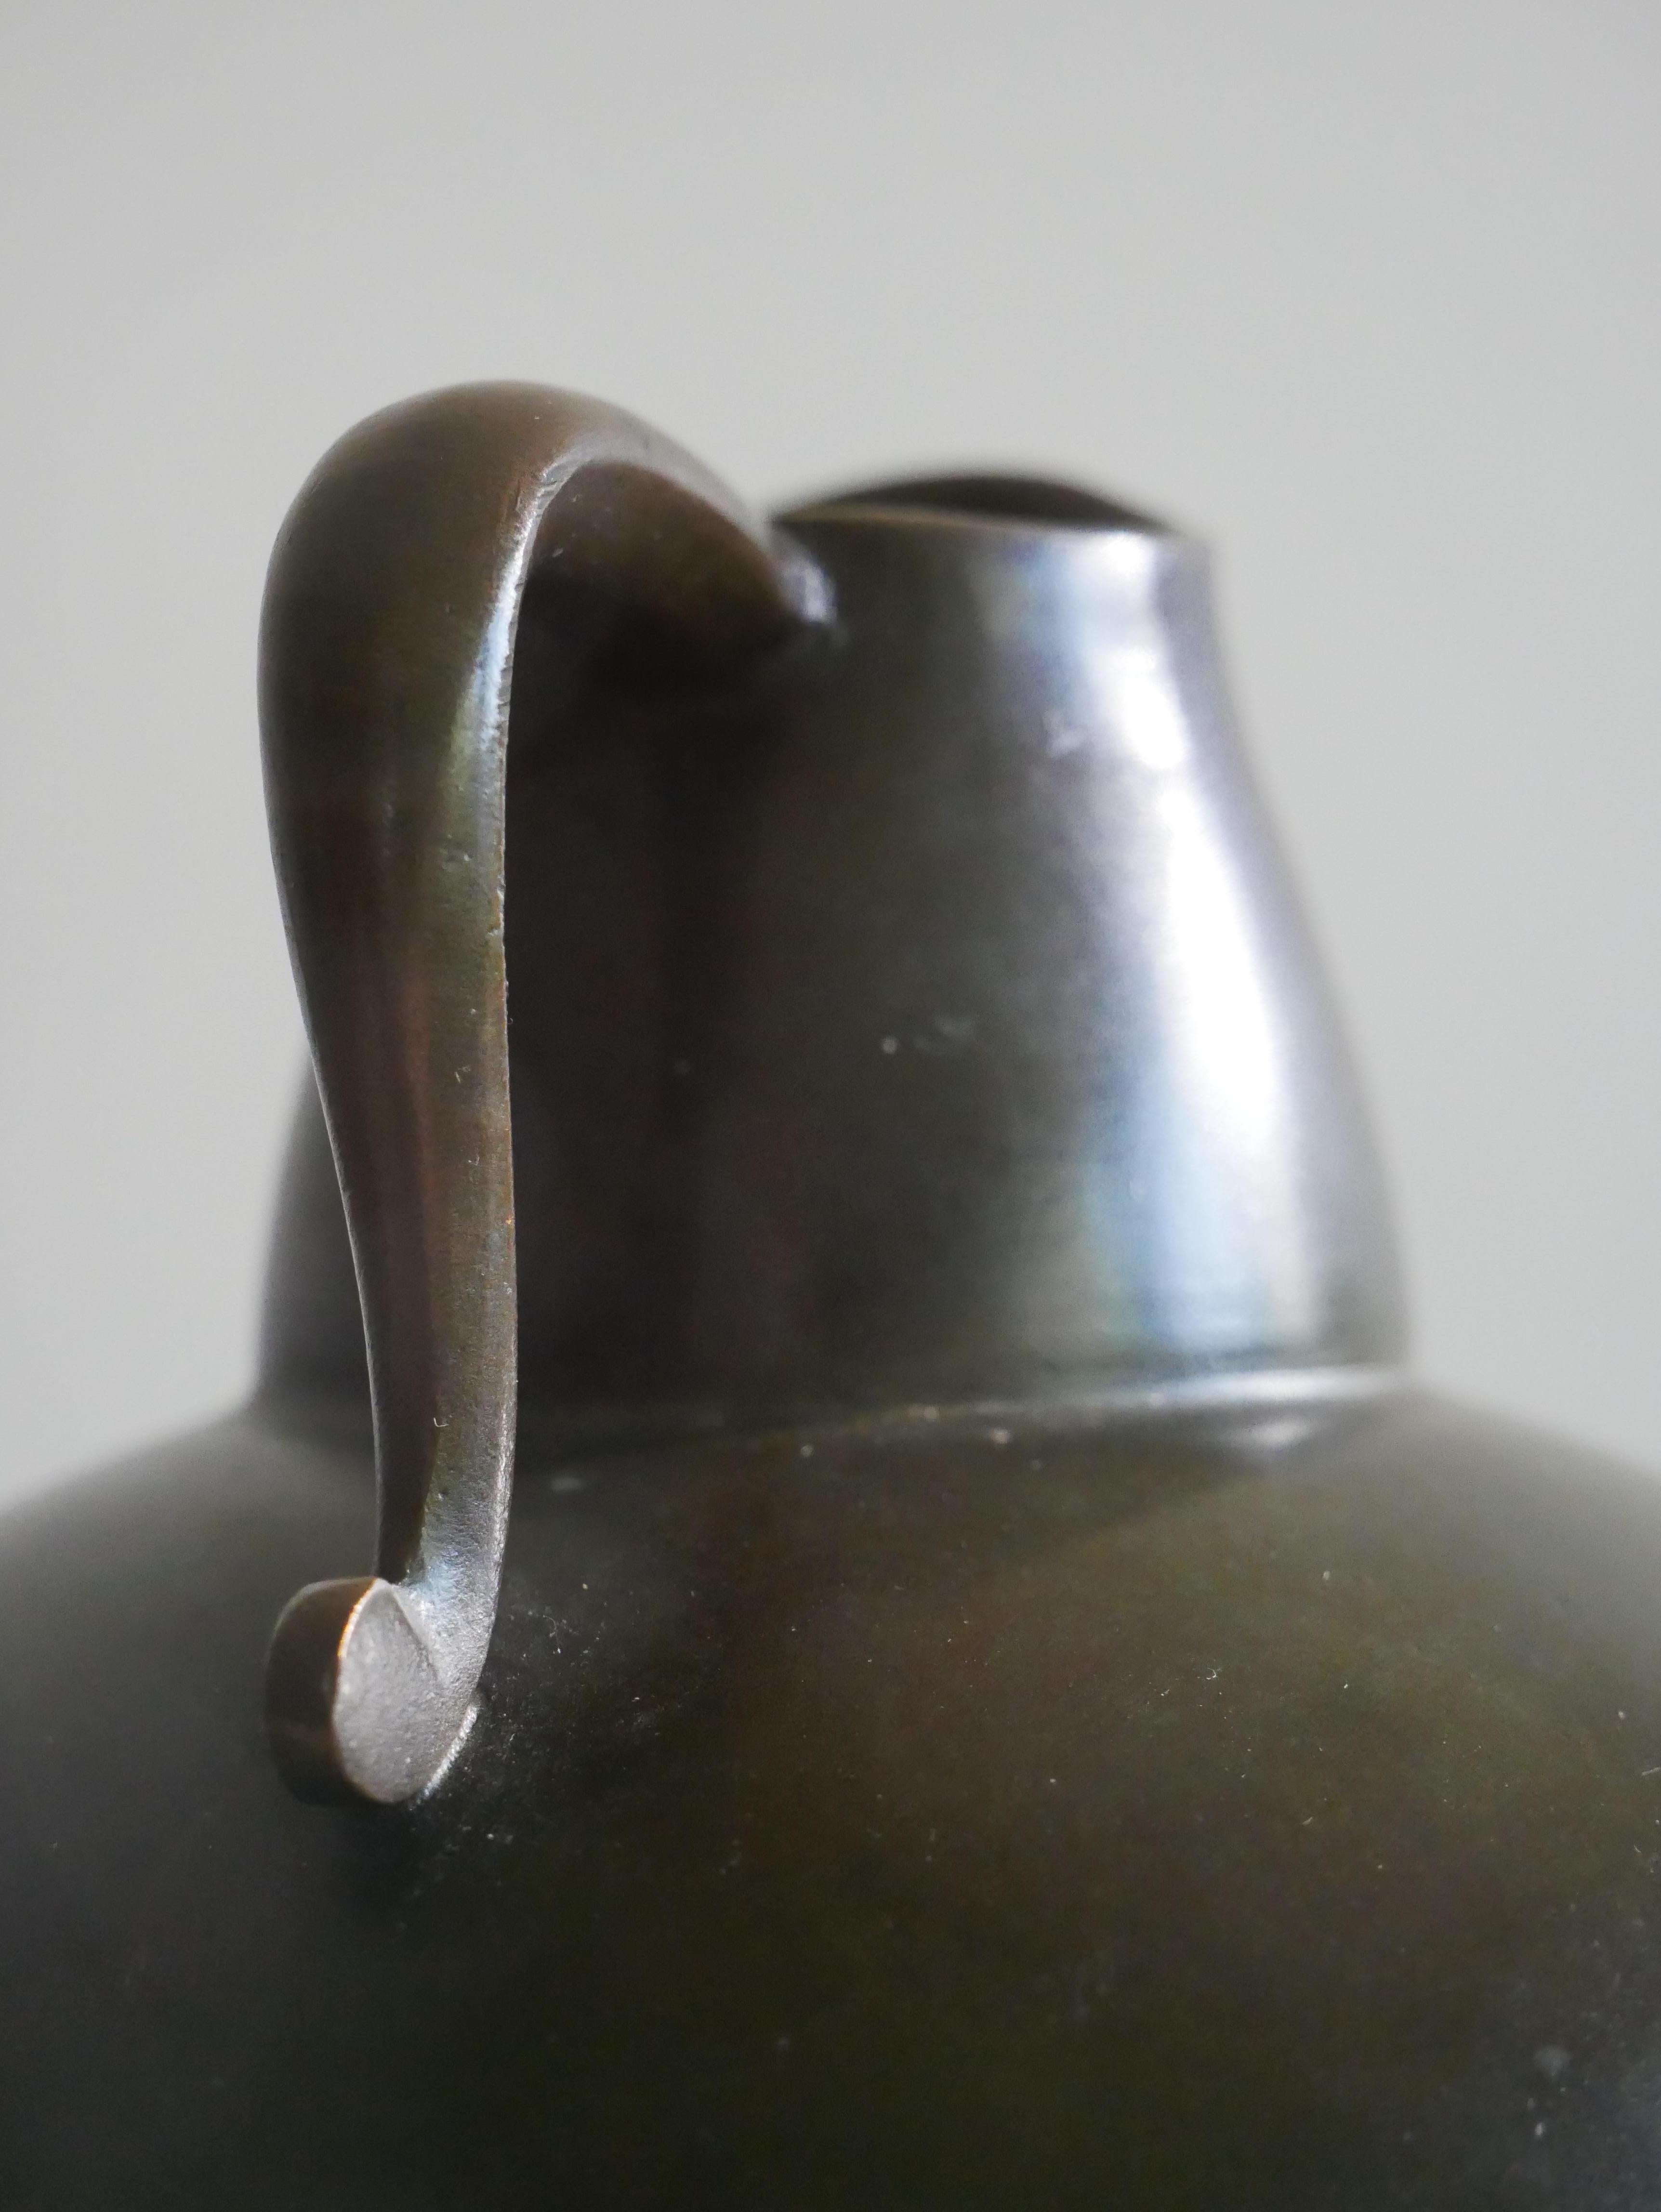 Vase conçu et produit par GAB, Guldsmedsaktiebolaget, Suède, années 1930. 
Estampillé avec la marque du fabricant. 
Fabriqué en bronze moulé.